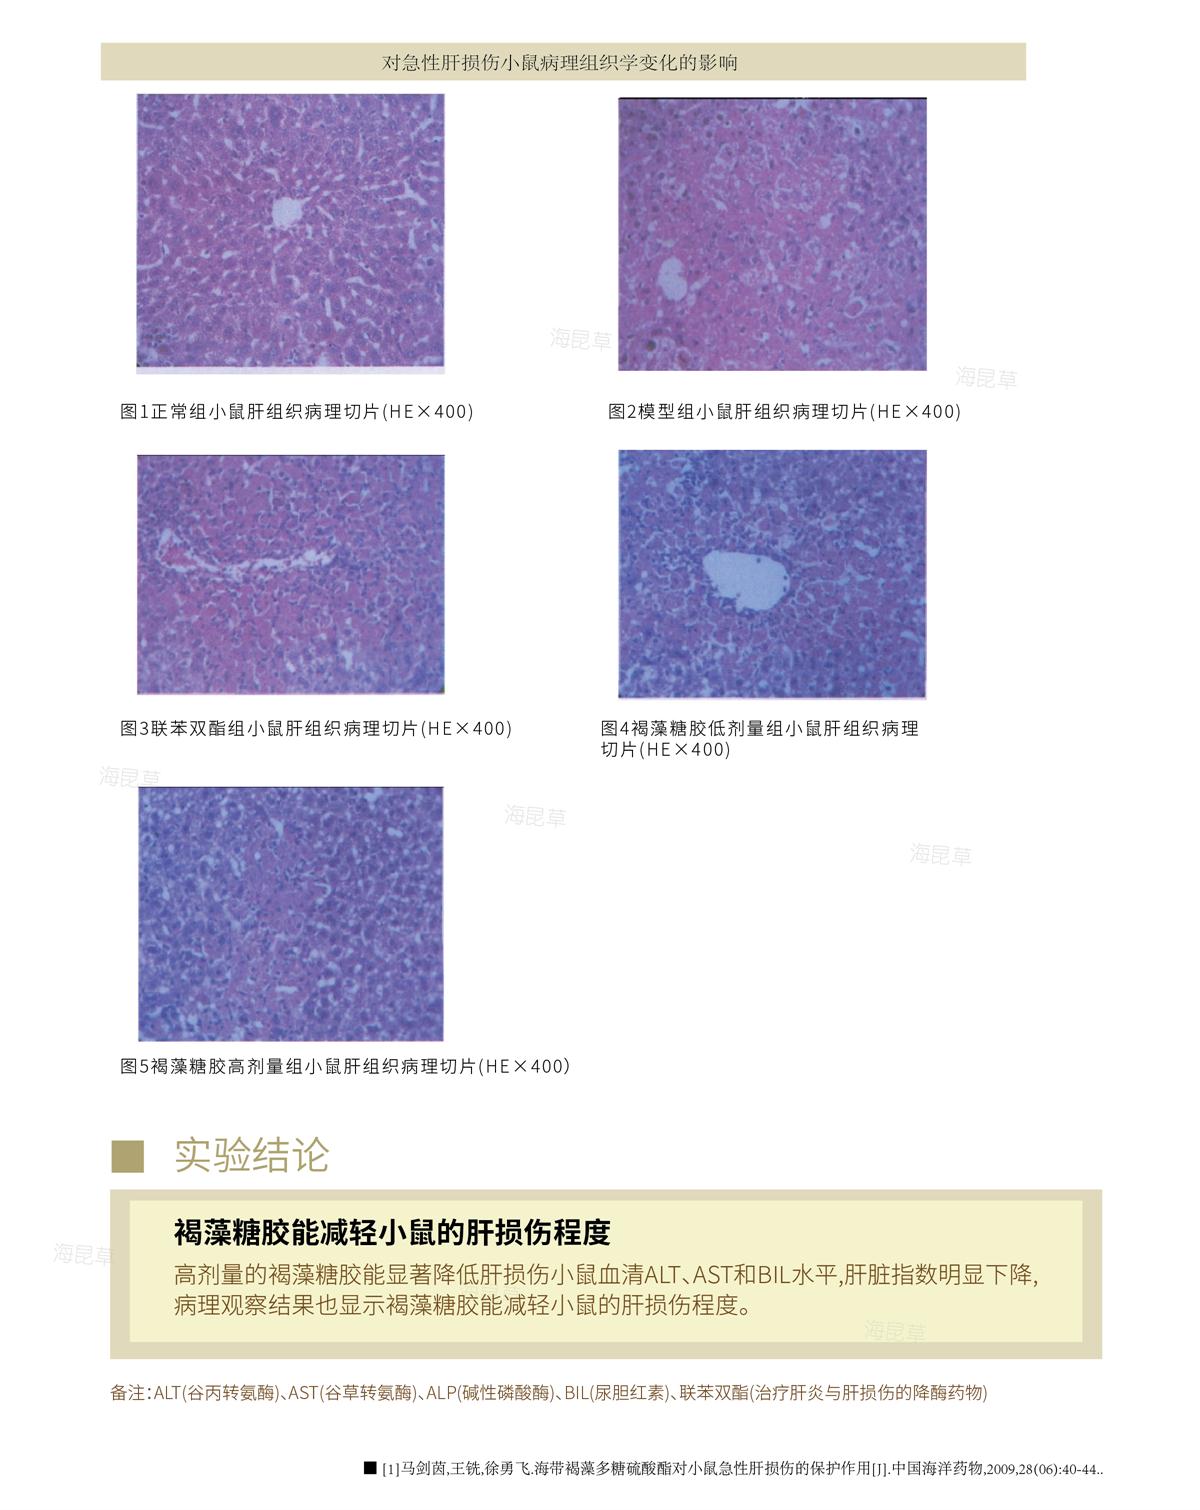 功效研究-肝肾篇2.jpg